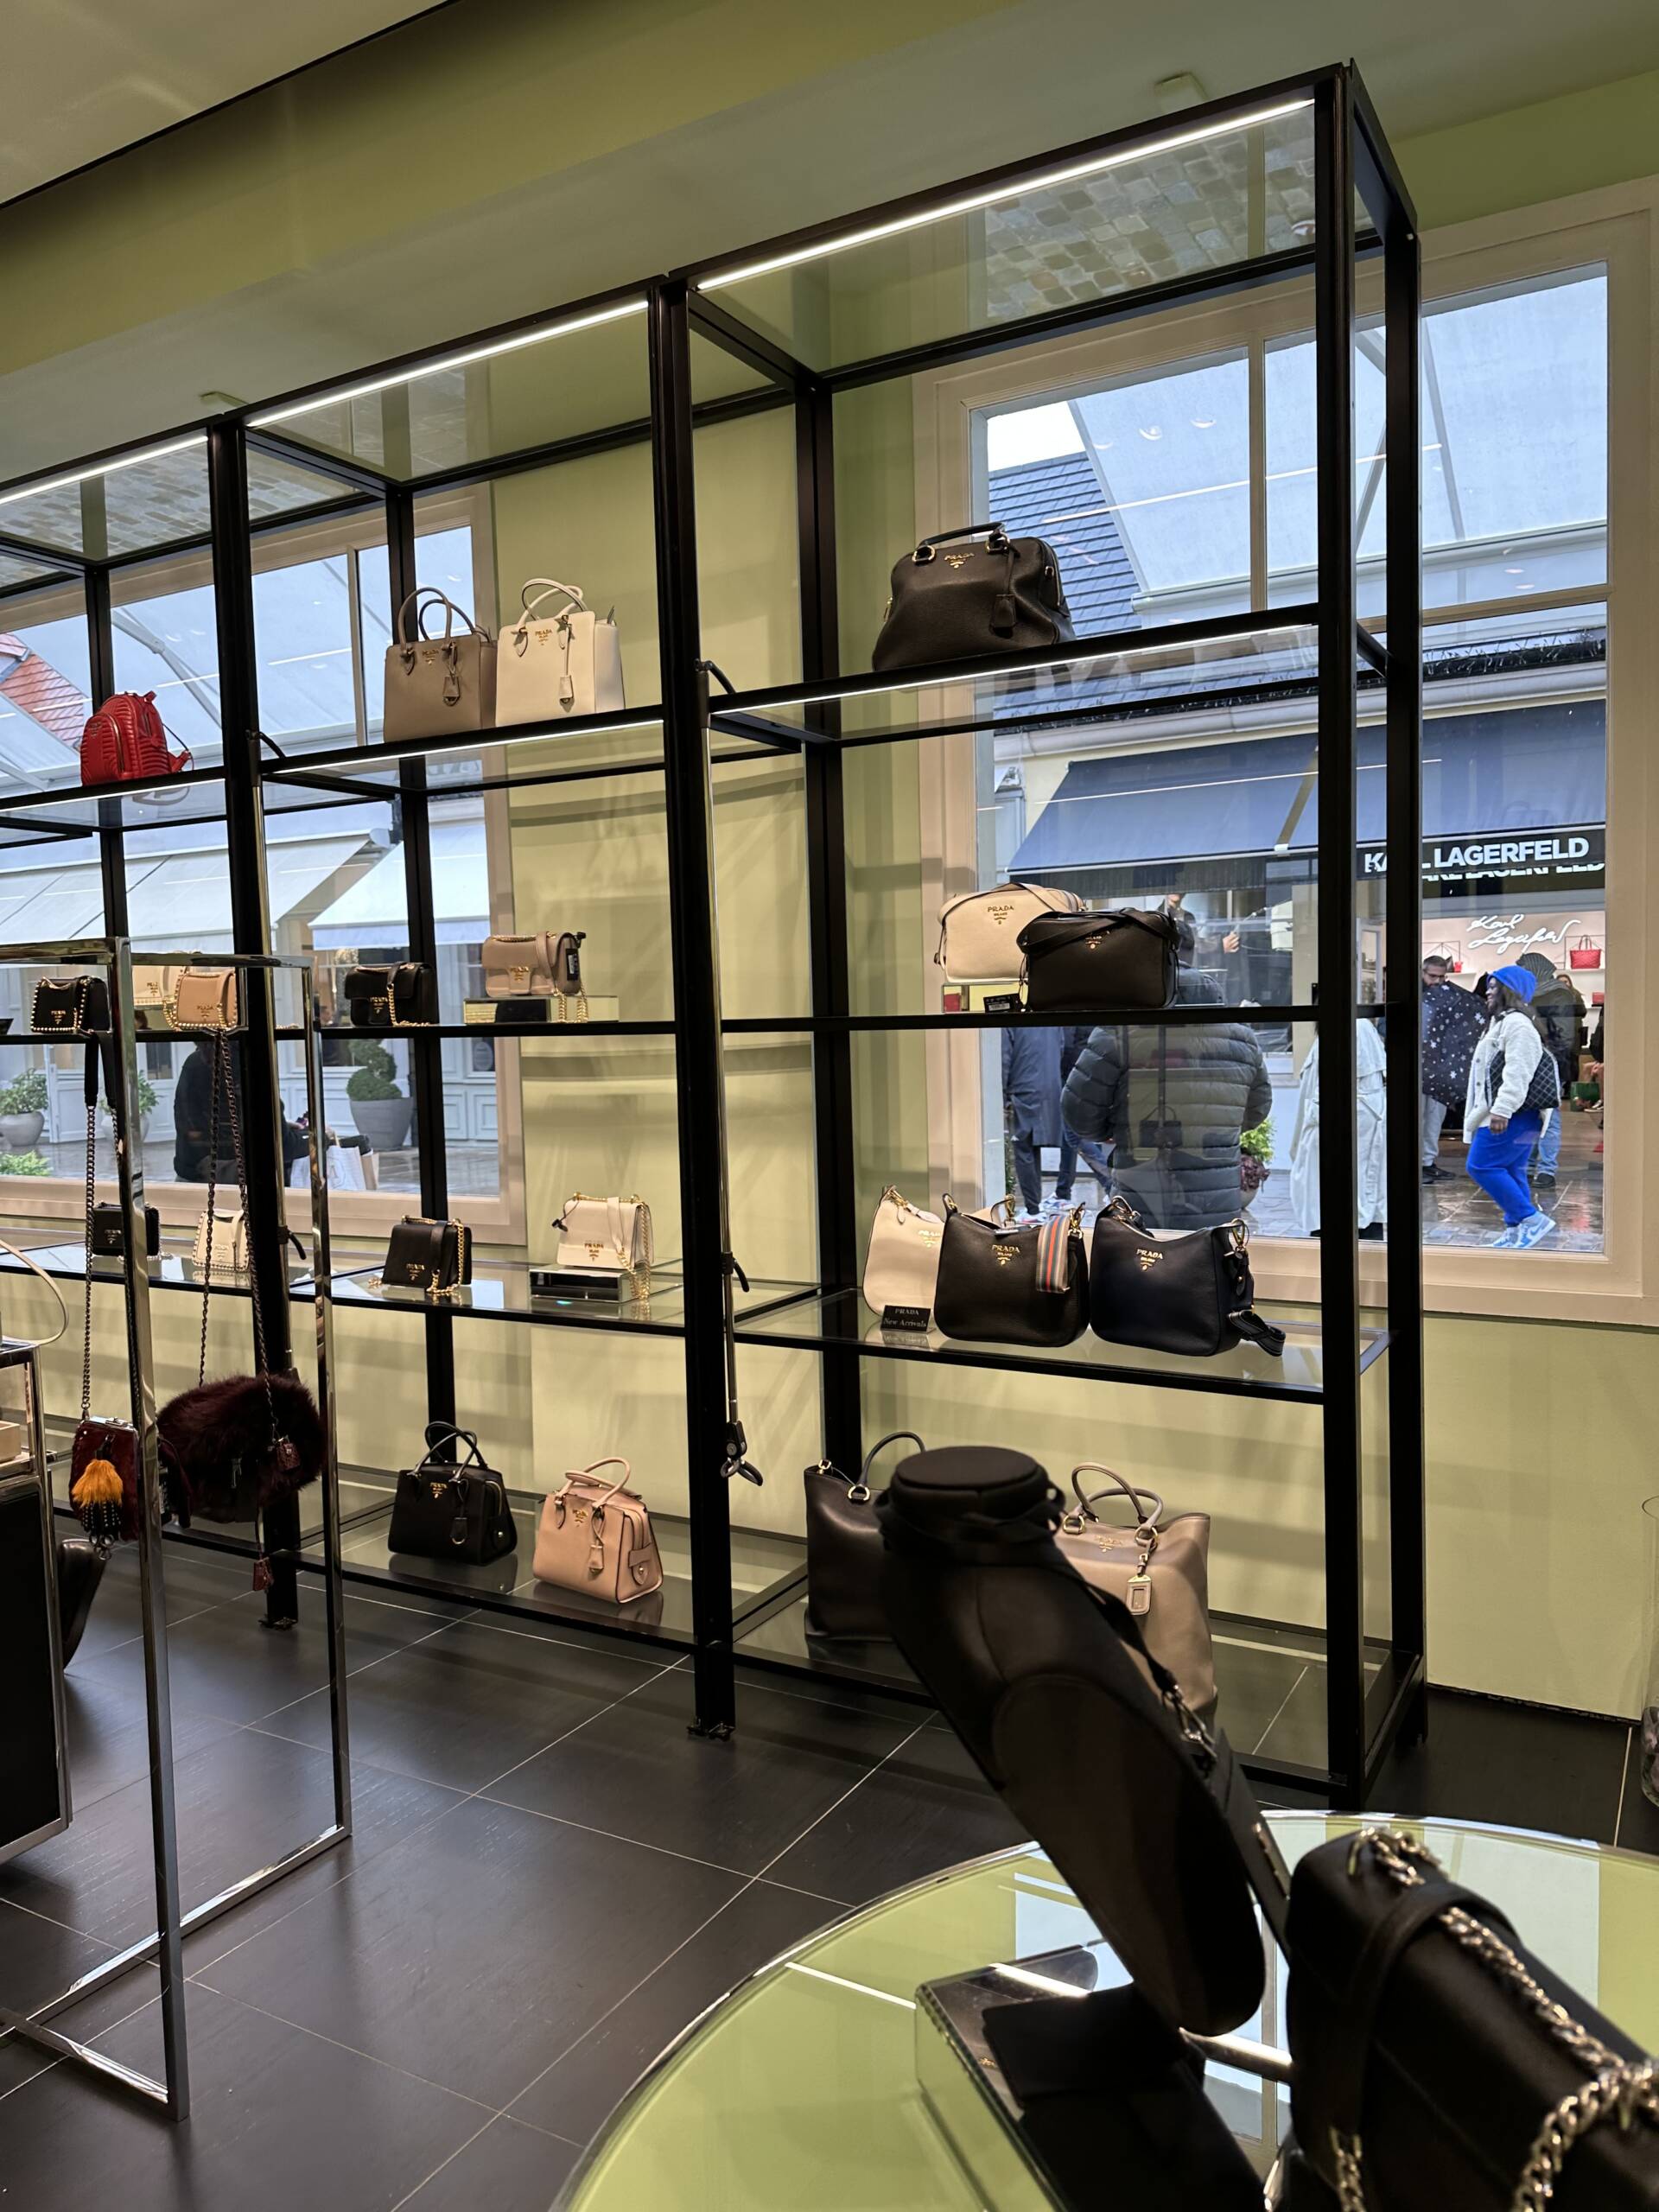 Louis Vuitton – Paris Station Shop